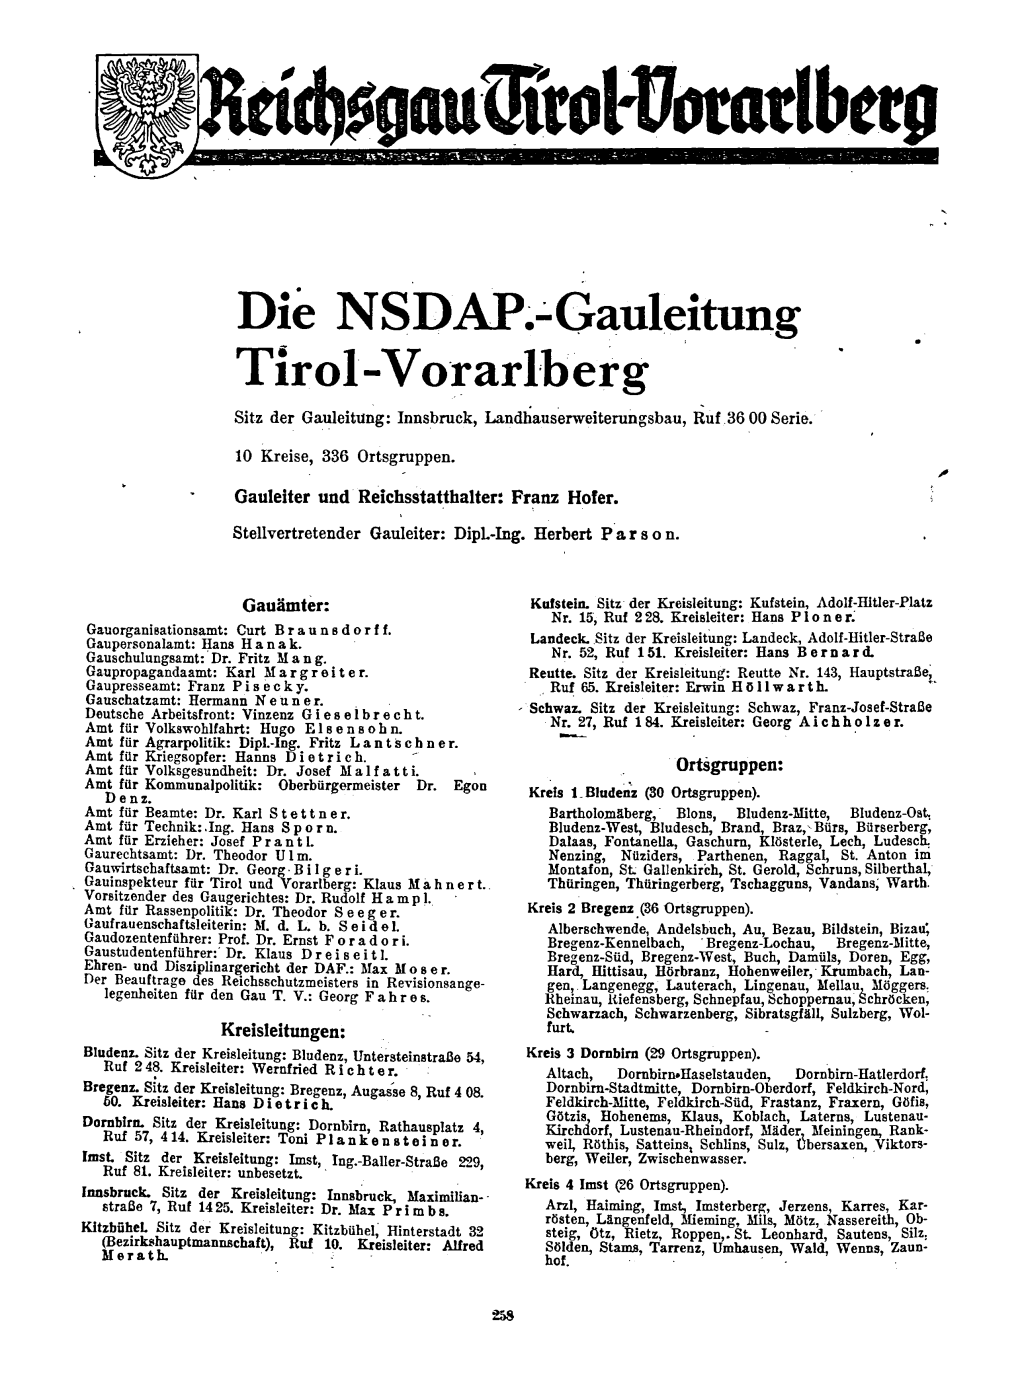 Tirol Und Vorarlberg NSDAP, Staatliche Verwaltung